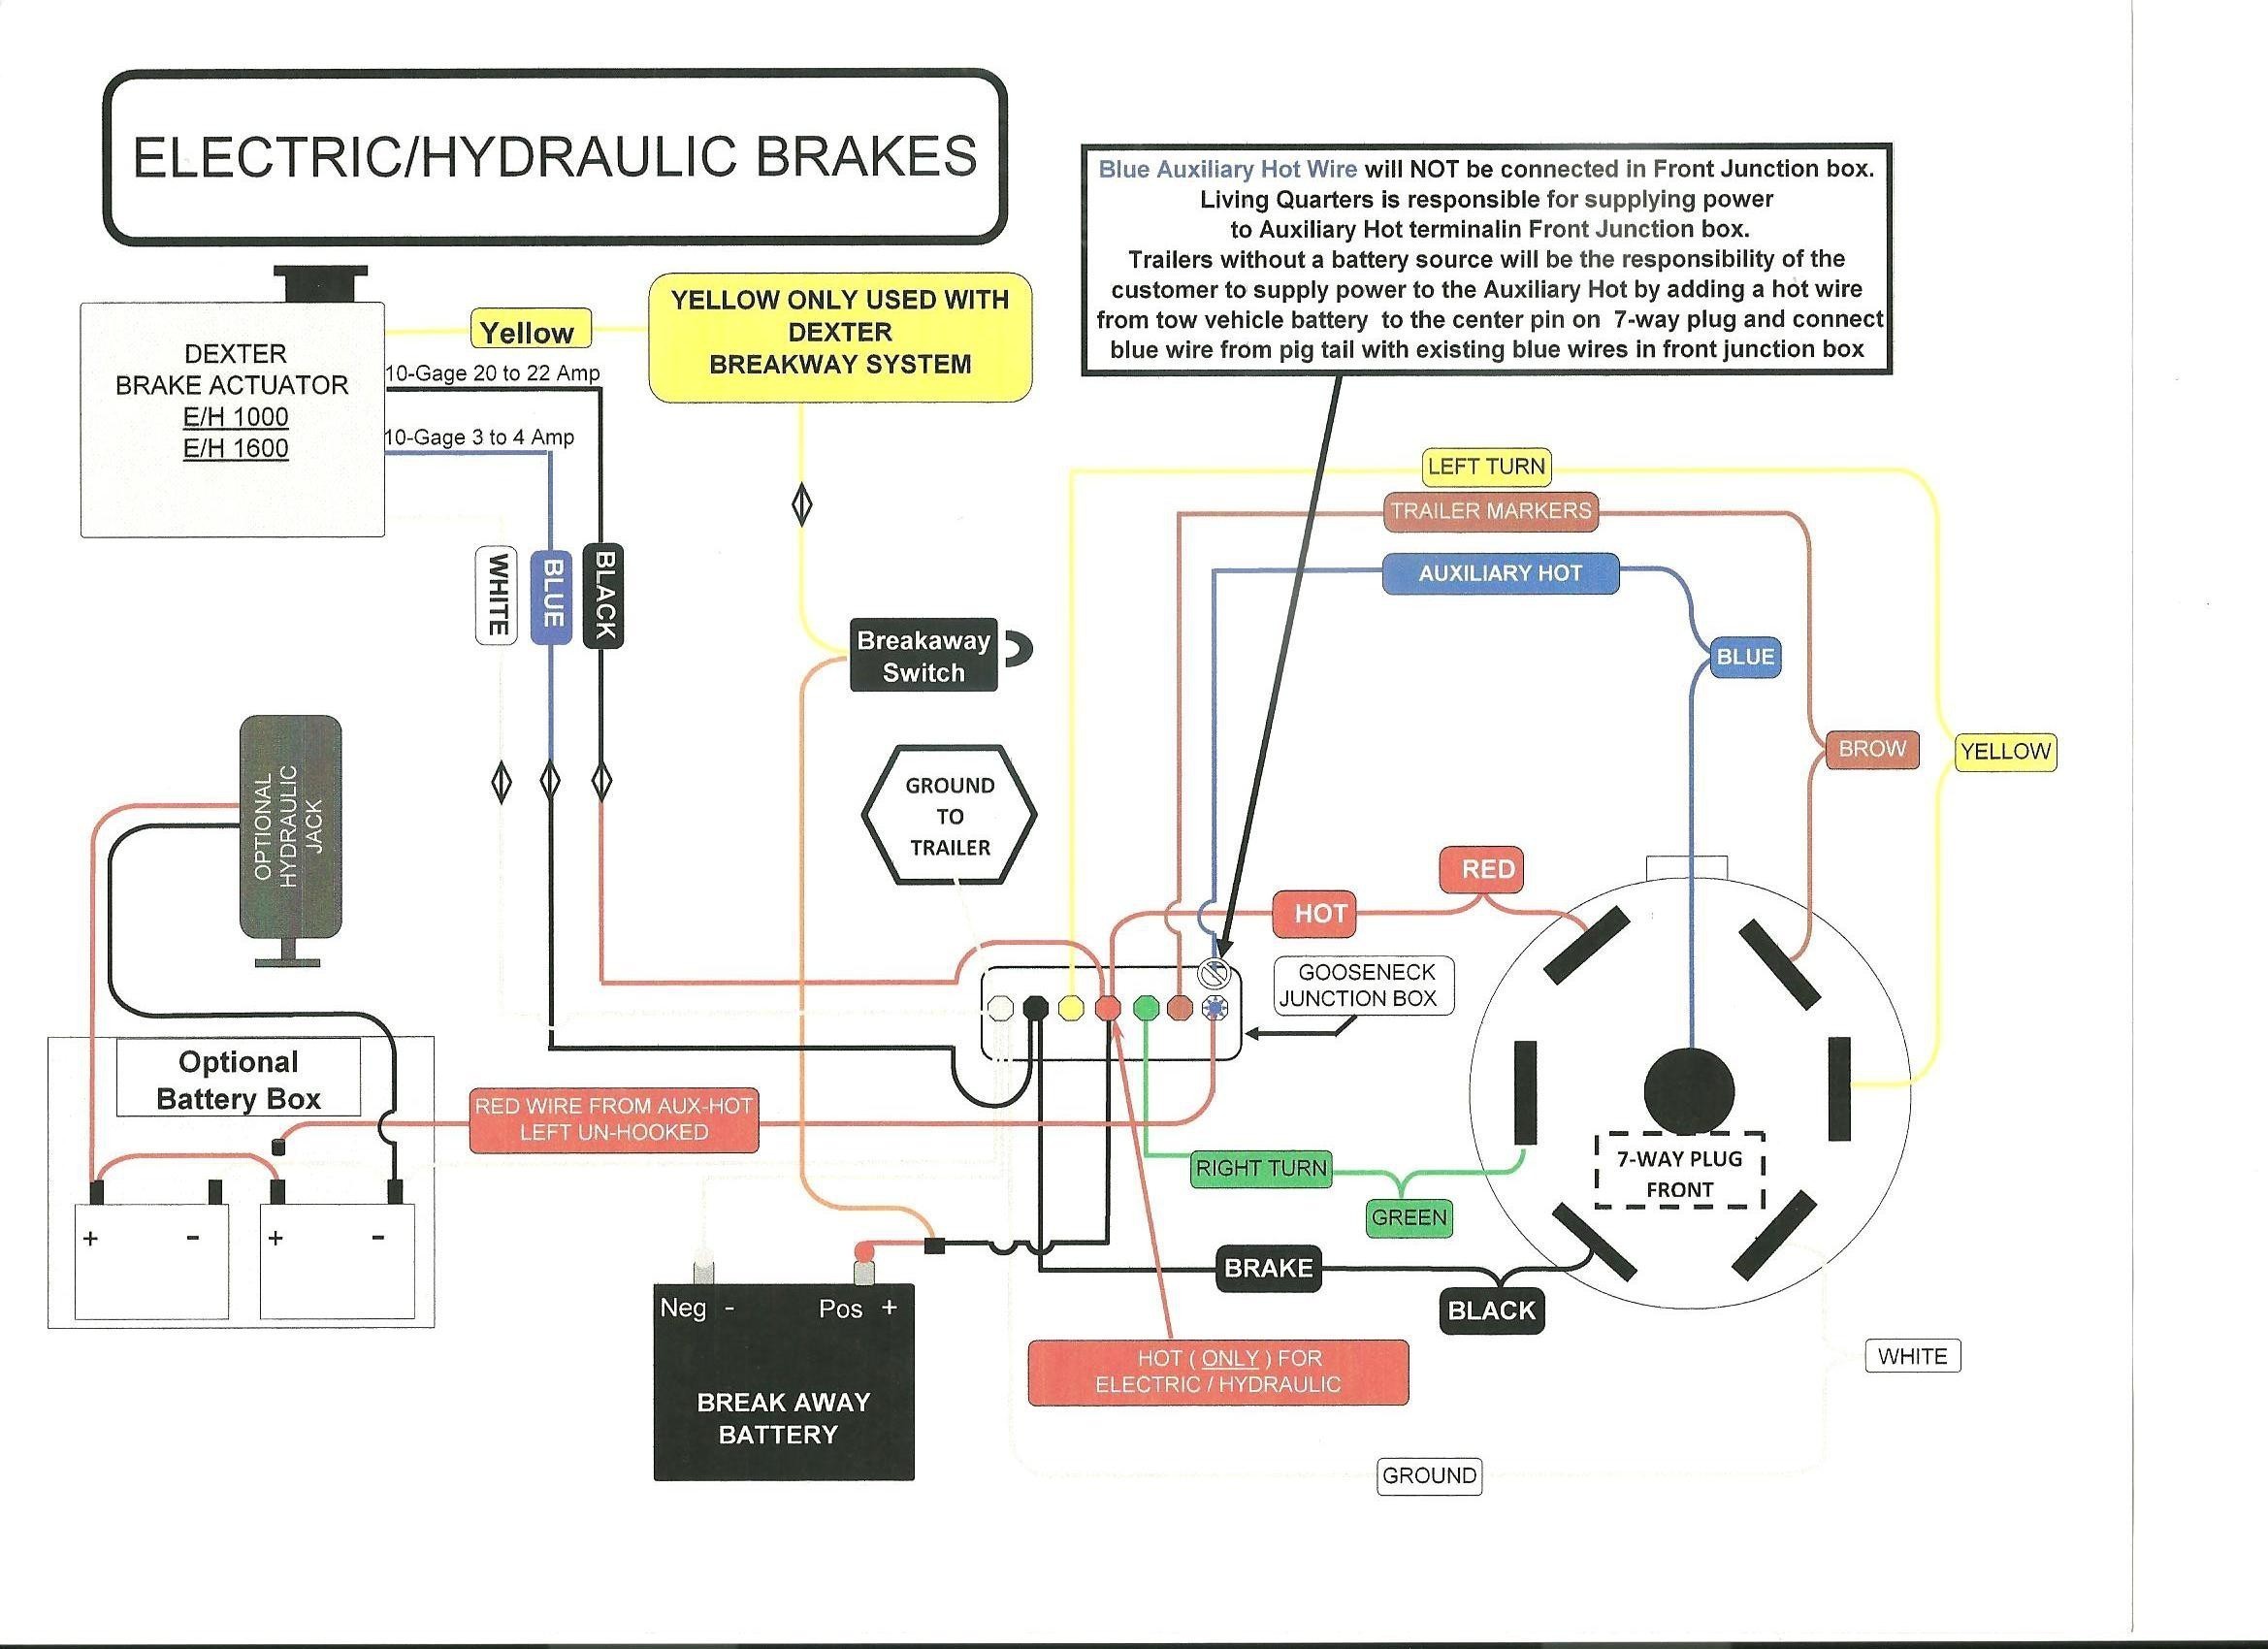 Electric Trailer Brakes Wiring Diagram Wiring Diagram for Electric Trailer Brakes Inspirationa Wiring Of Electric Trailer Brakes Wiring Diagram